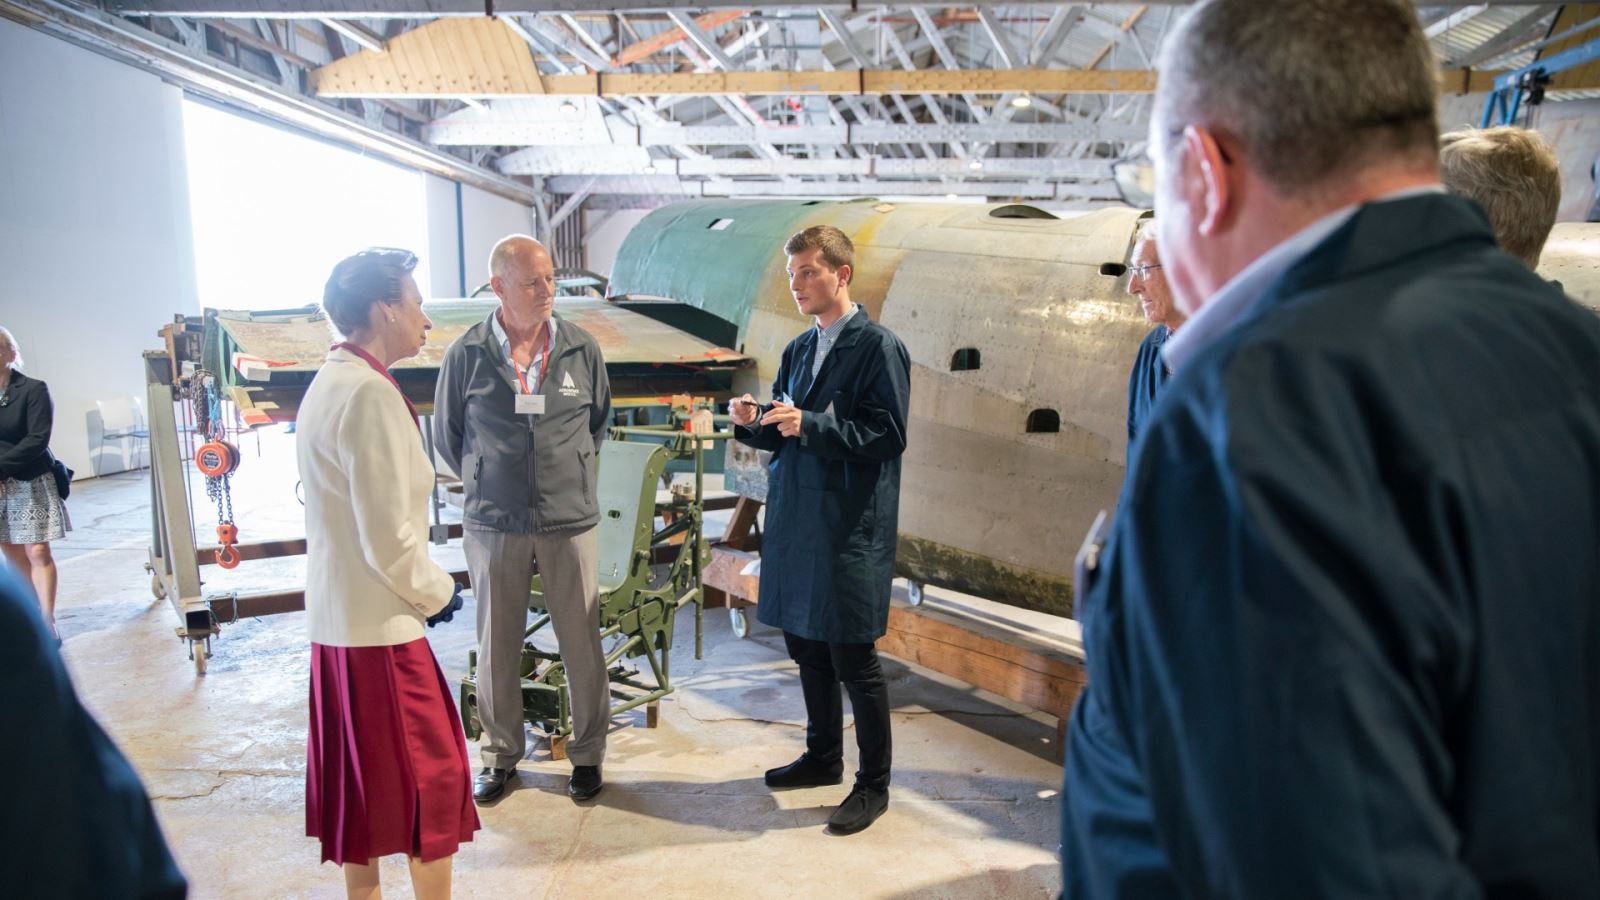 Princess Royal opens Conservation Hangar at Aerospace Bristol